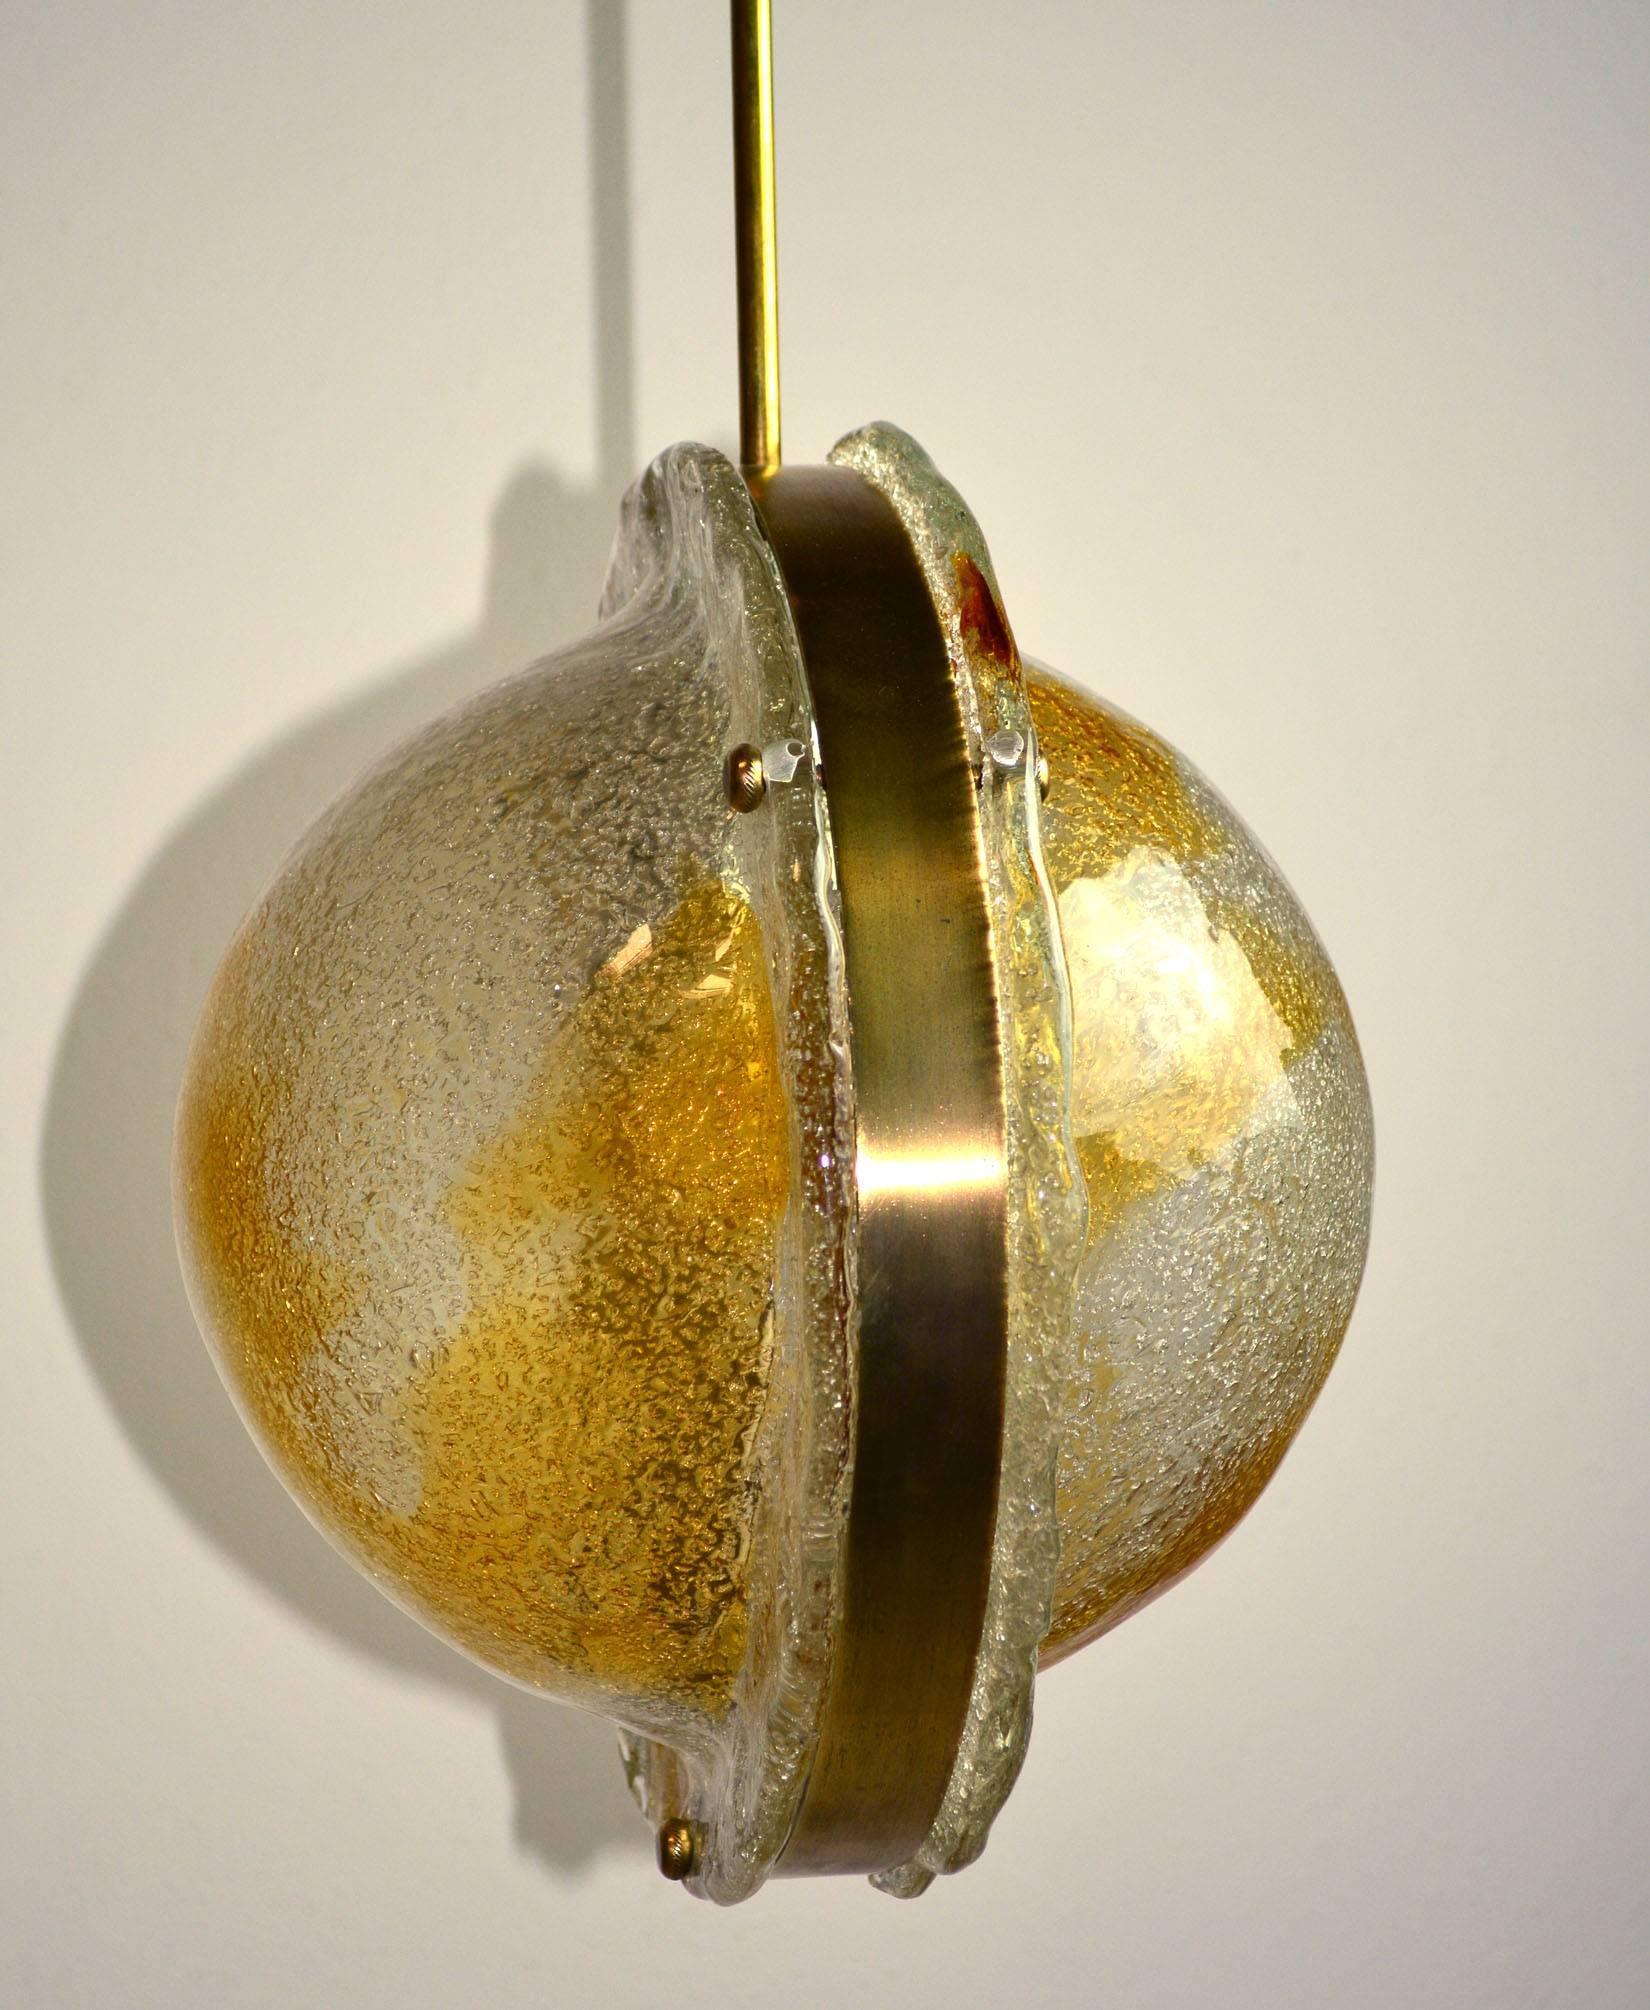 Un luminaire italien en verre de Murano par Mazzega composé de deux pièces moulées en verre clair avec des tourbillons ambrés sur une armature en laiton.